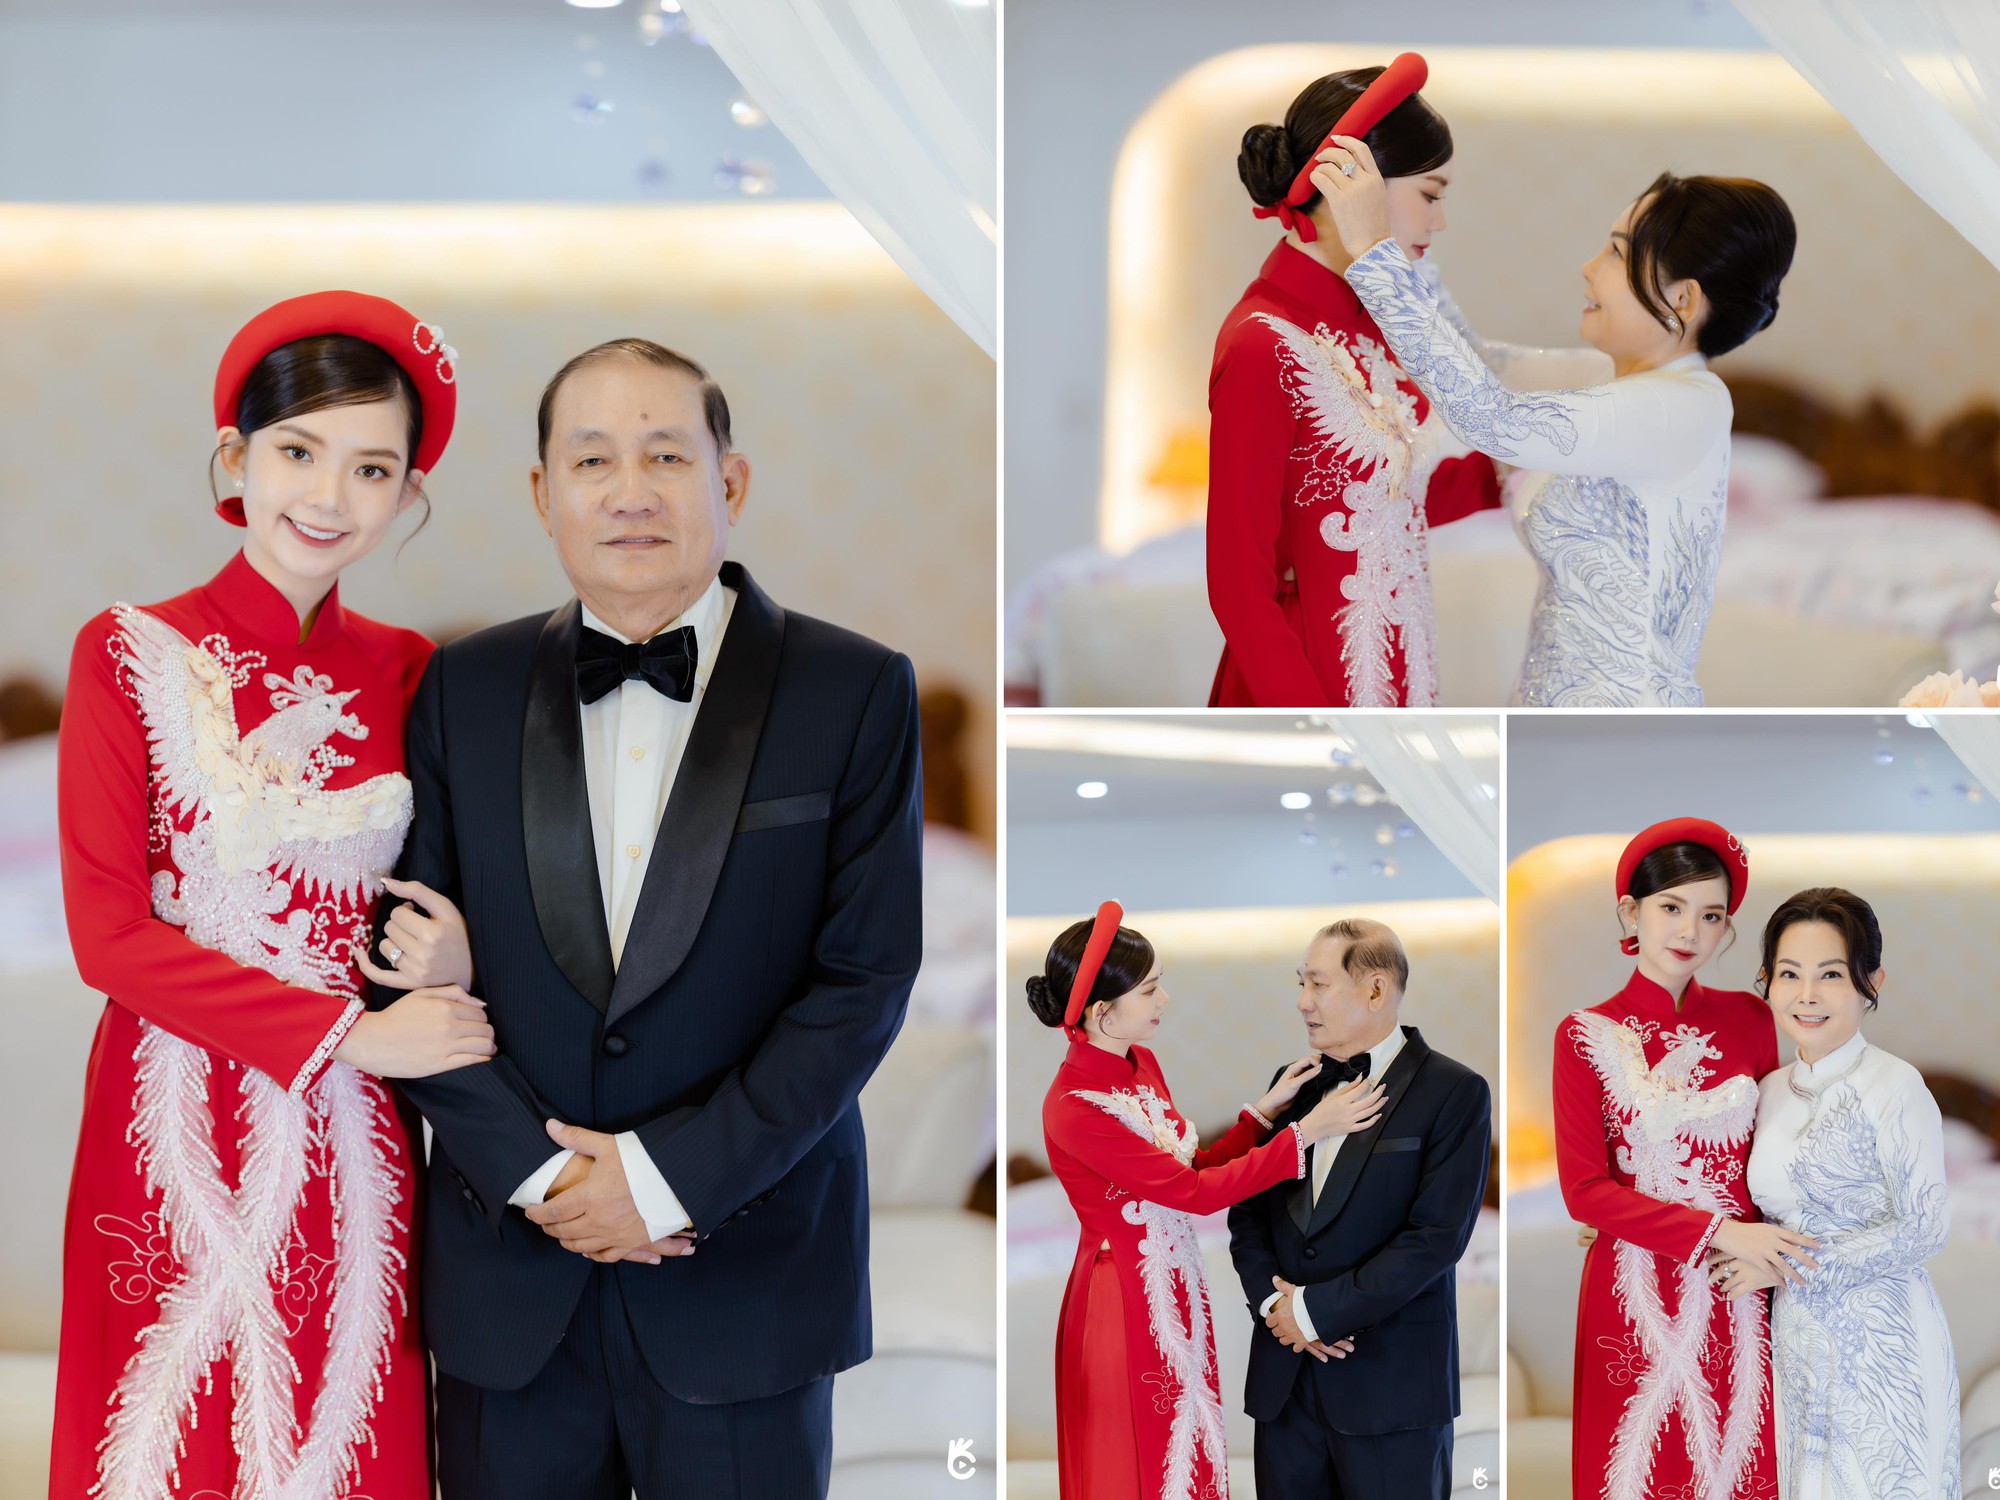 Cô dâu An Giang tiết lộ về người chồng sau đám cưới được lên báo nước ngoài - Ảnh 7.